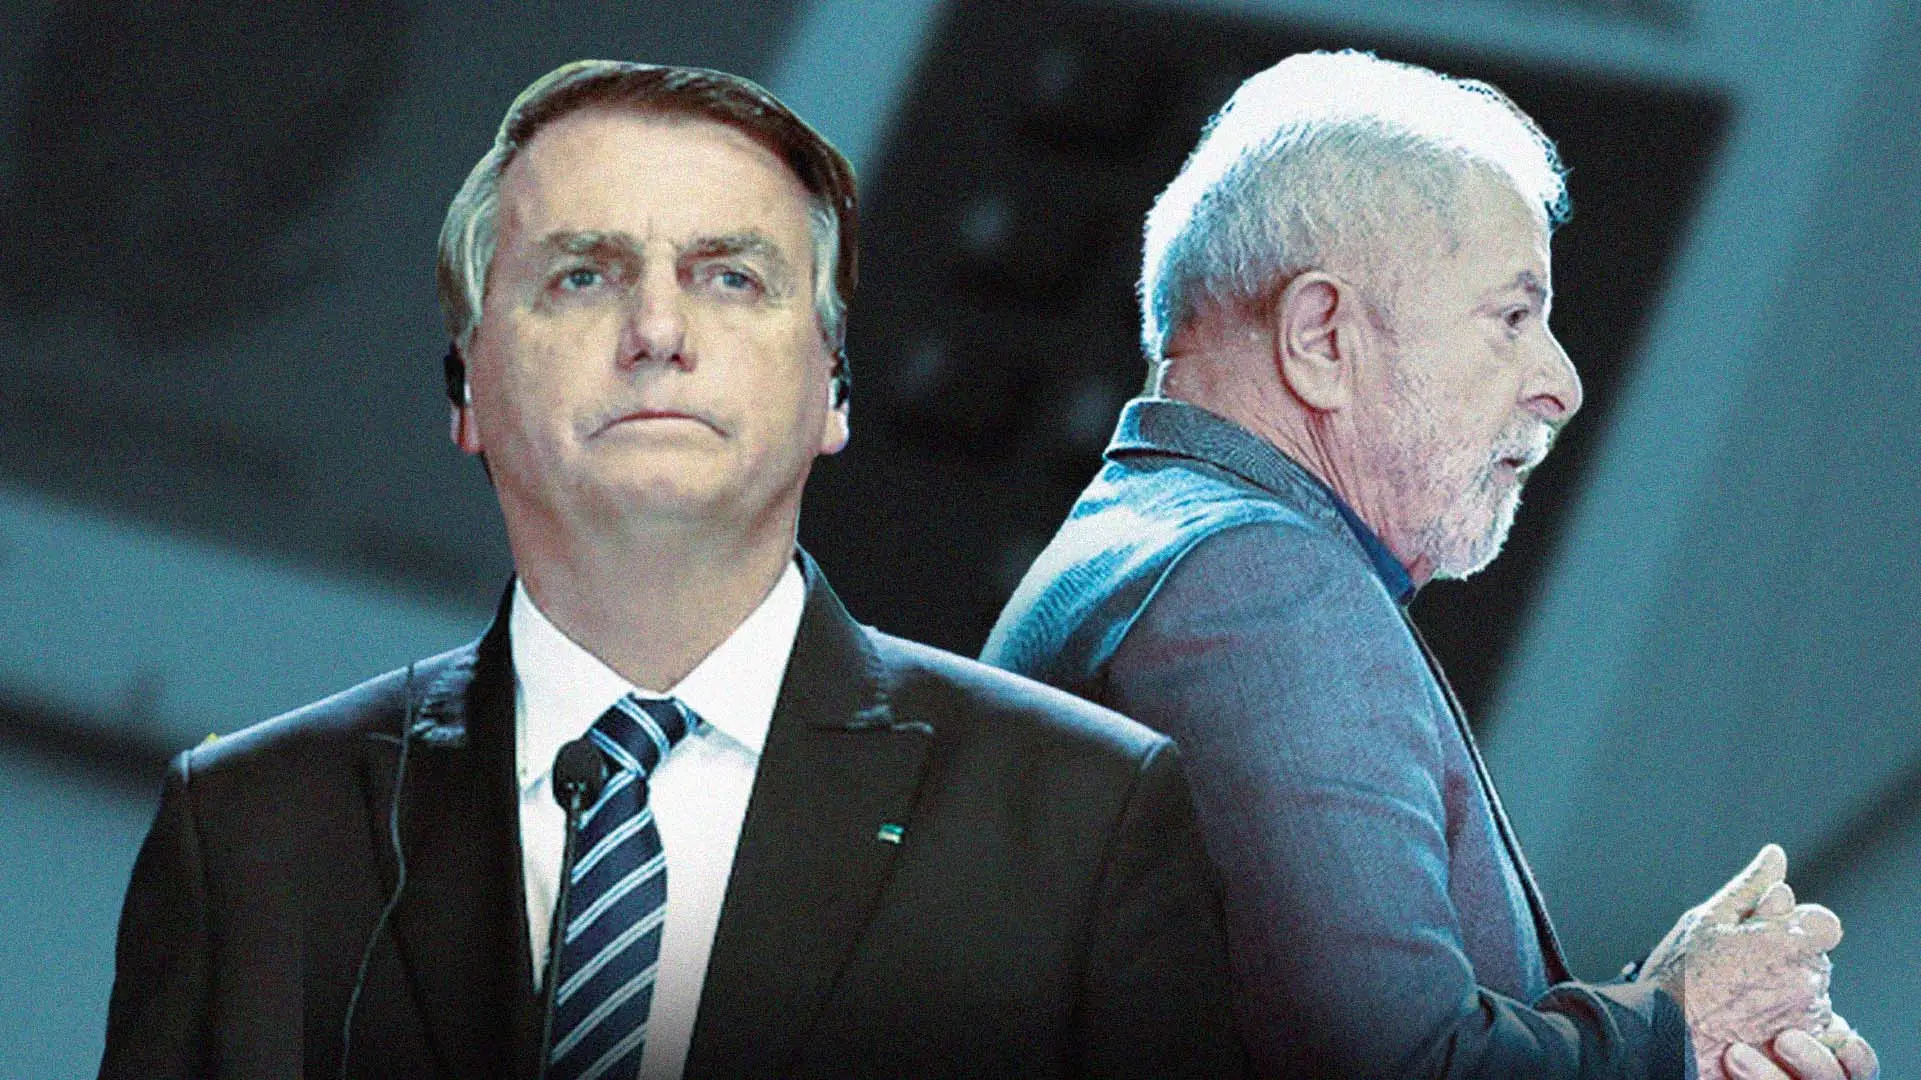 LB Os Trunfos de Bolsonaro Para se Reeleger, Segundo Cientista Político